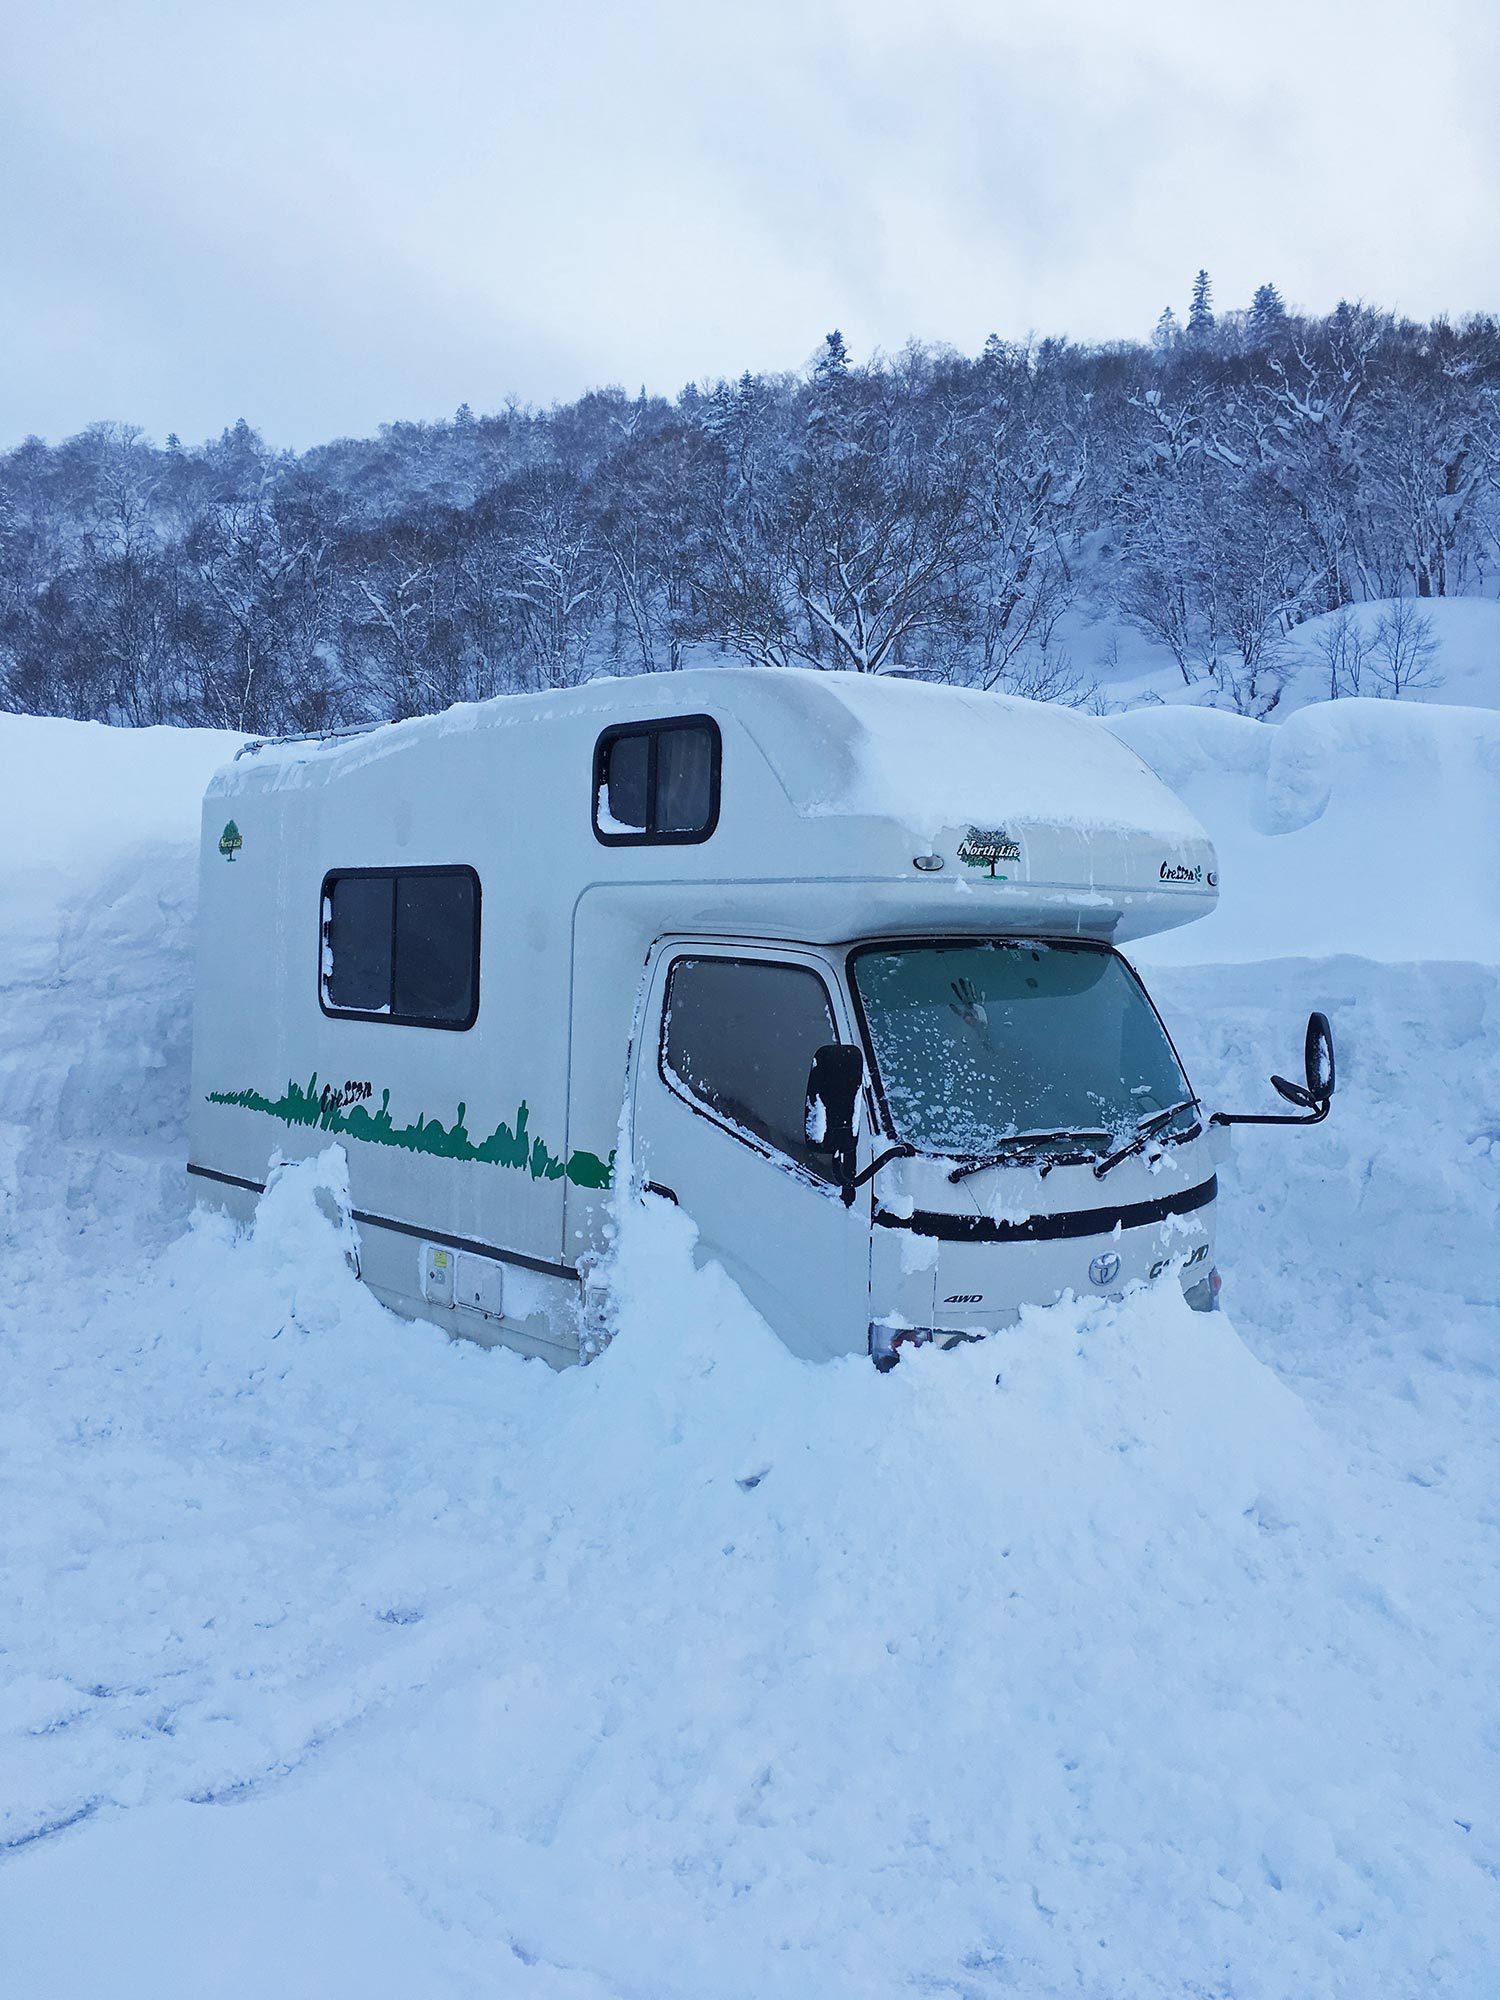 A camper van snowed in in Kiroro, Japan during a ski trip.